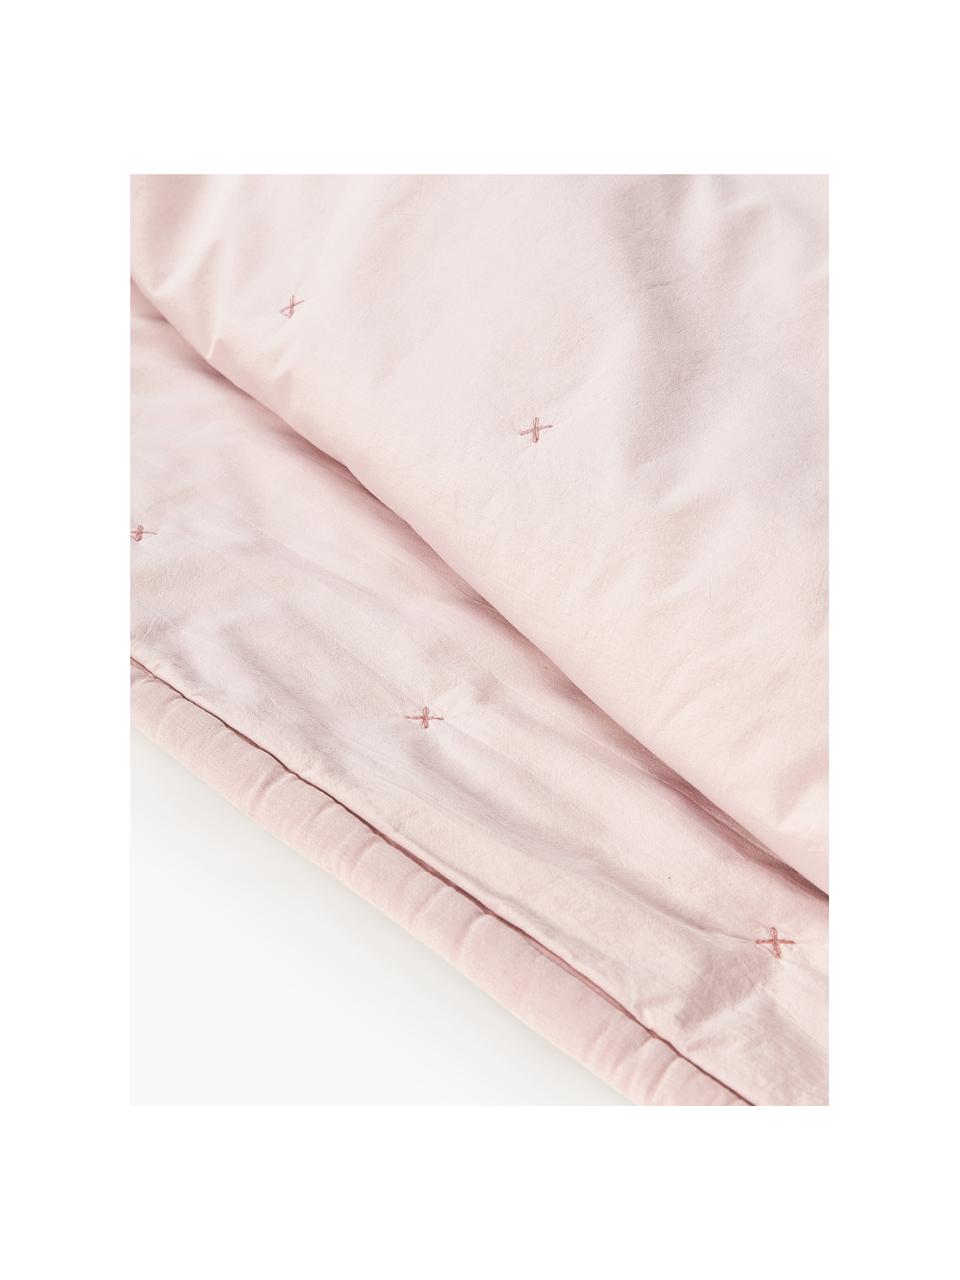 Couvre-lit en coton Lenore, Rose pâle, larg. 250 x long. 230 cm